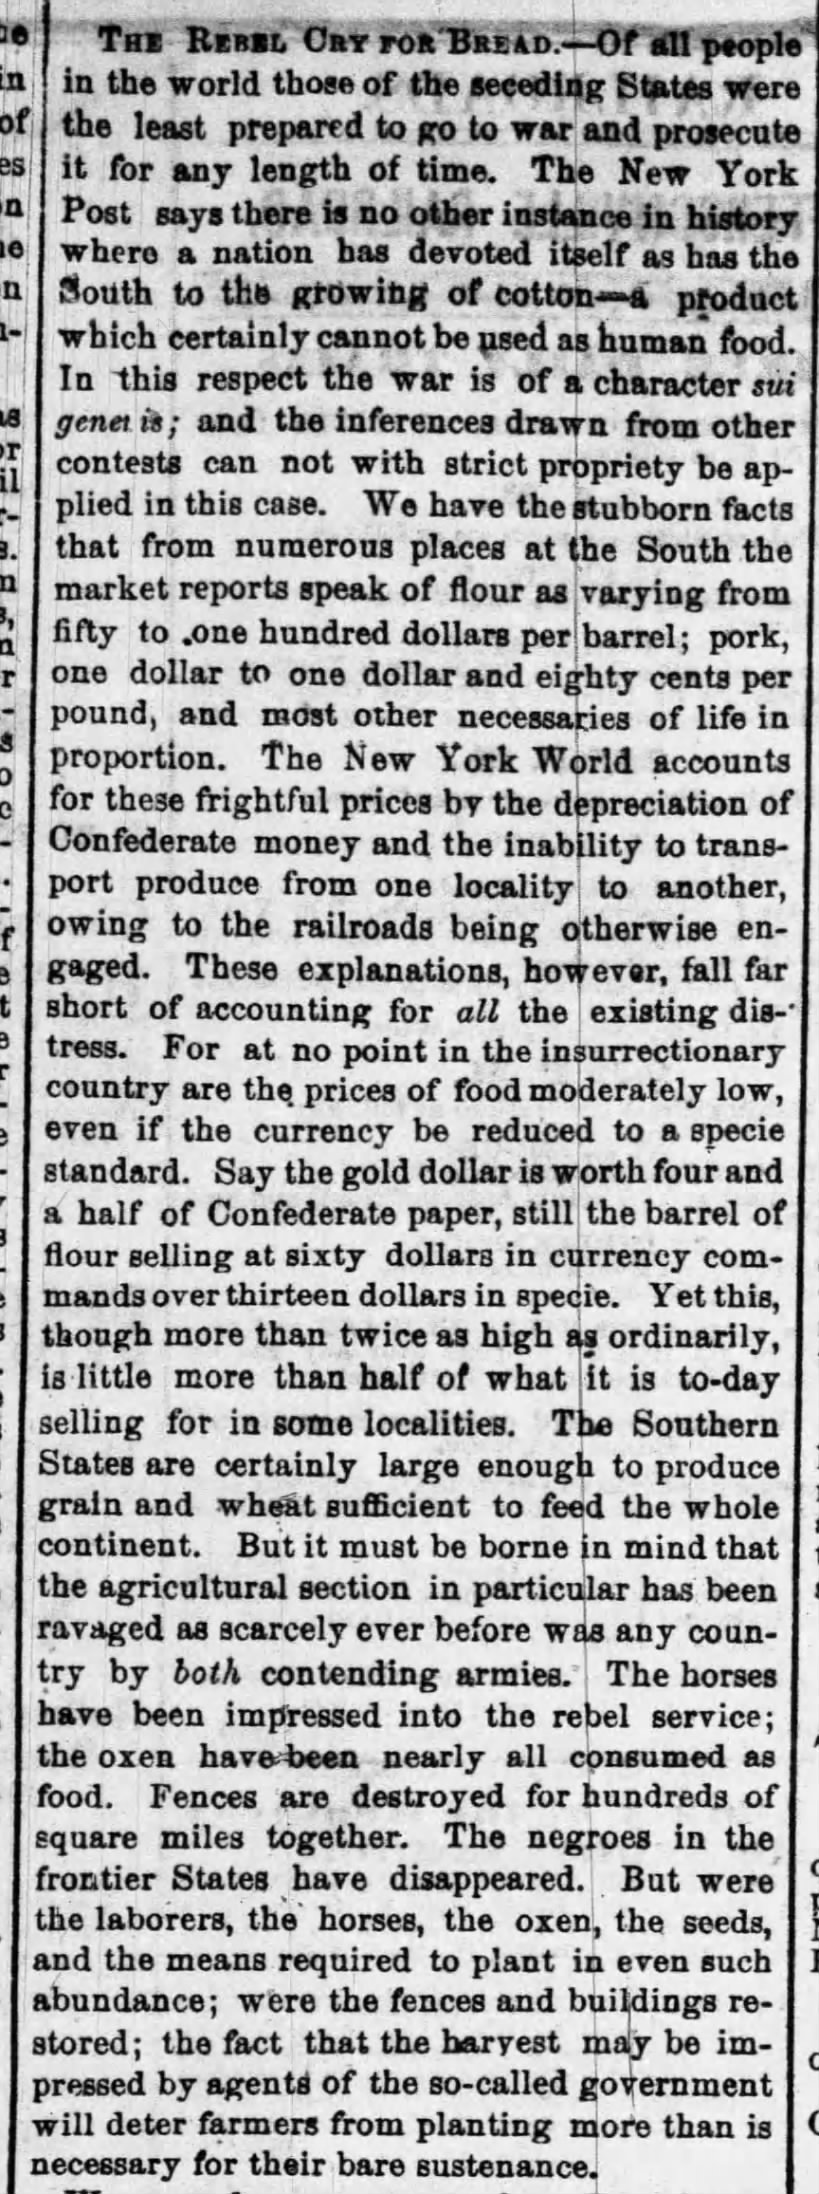 The Courier Journal (Louisville, Kentucky) April 15, 1863